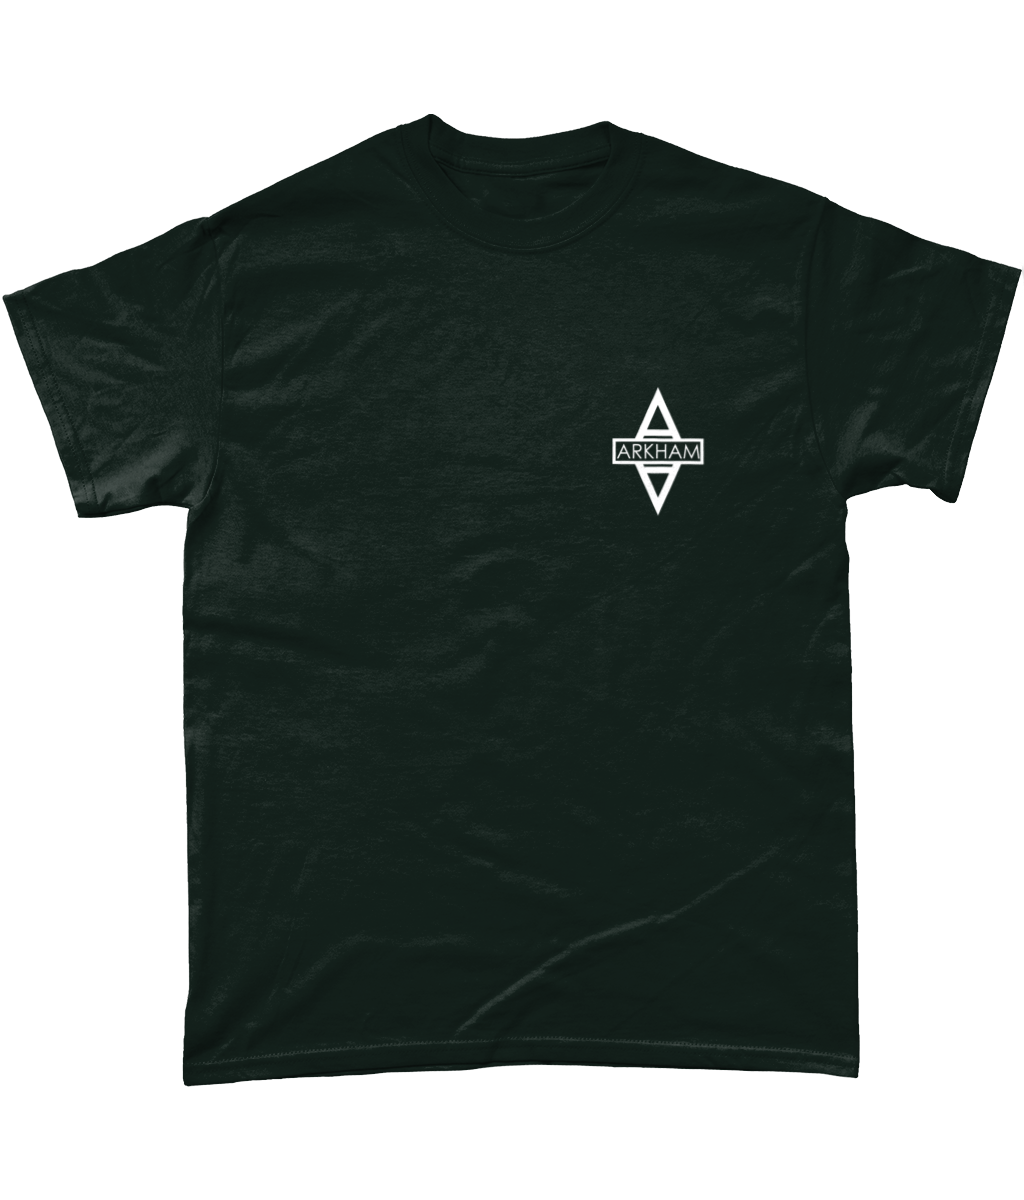 Arkham Asylum: T-Shirt